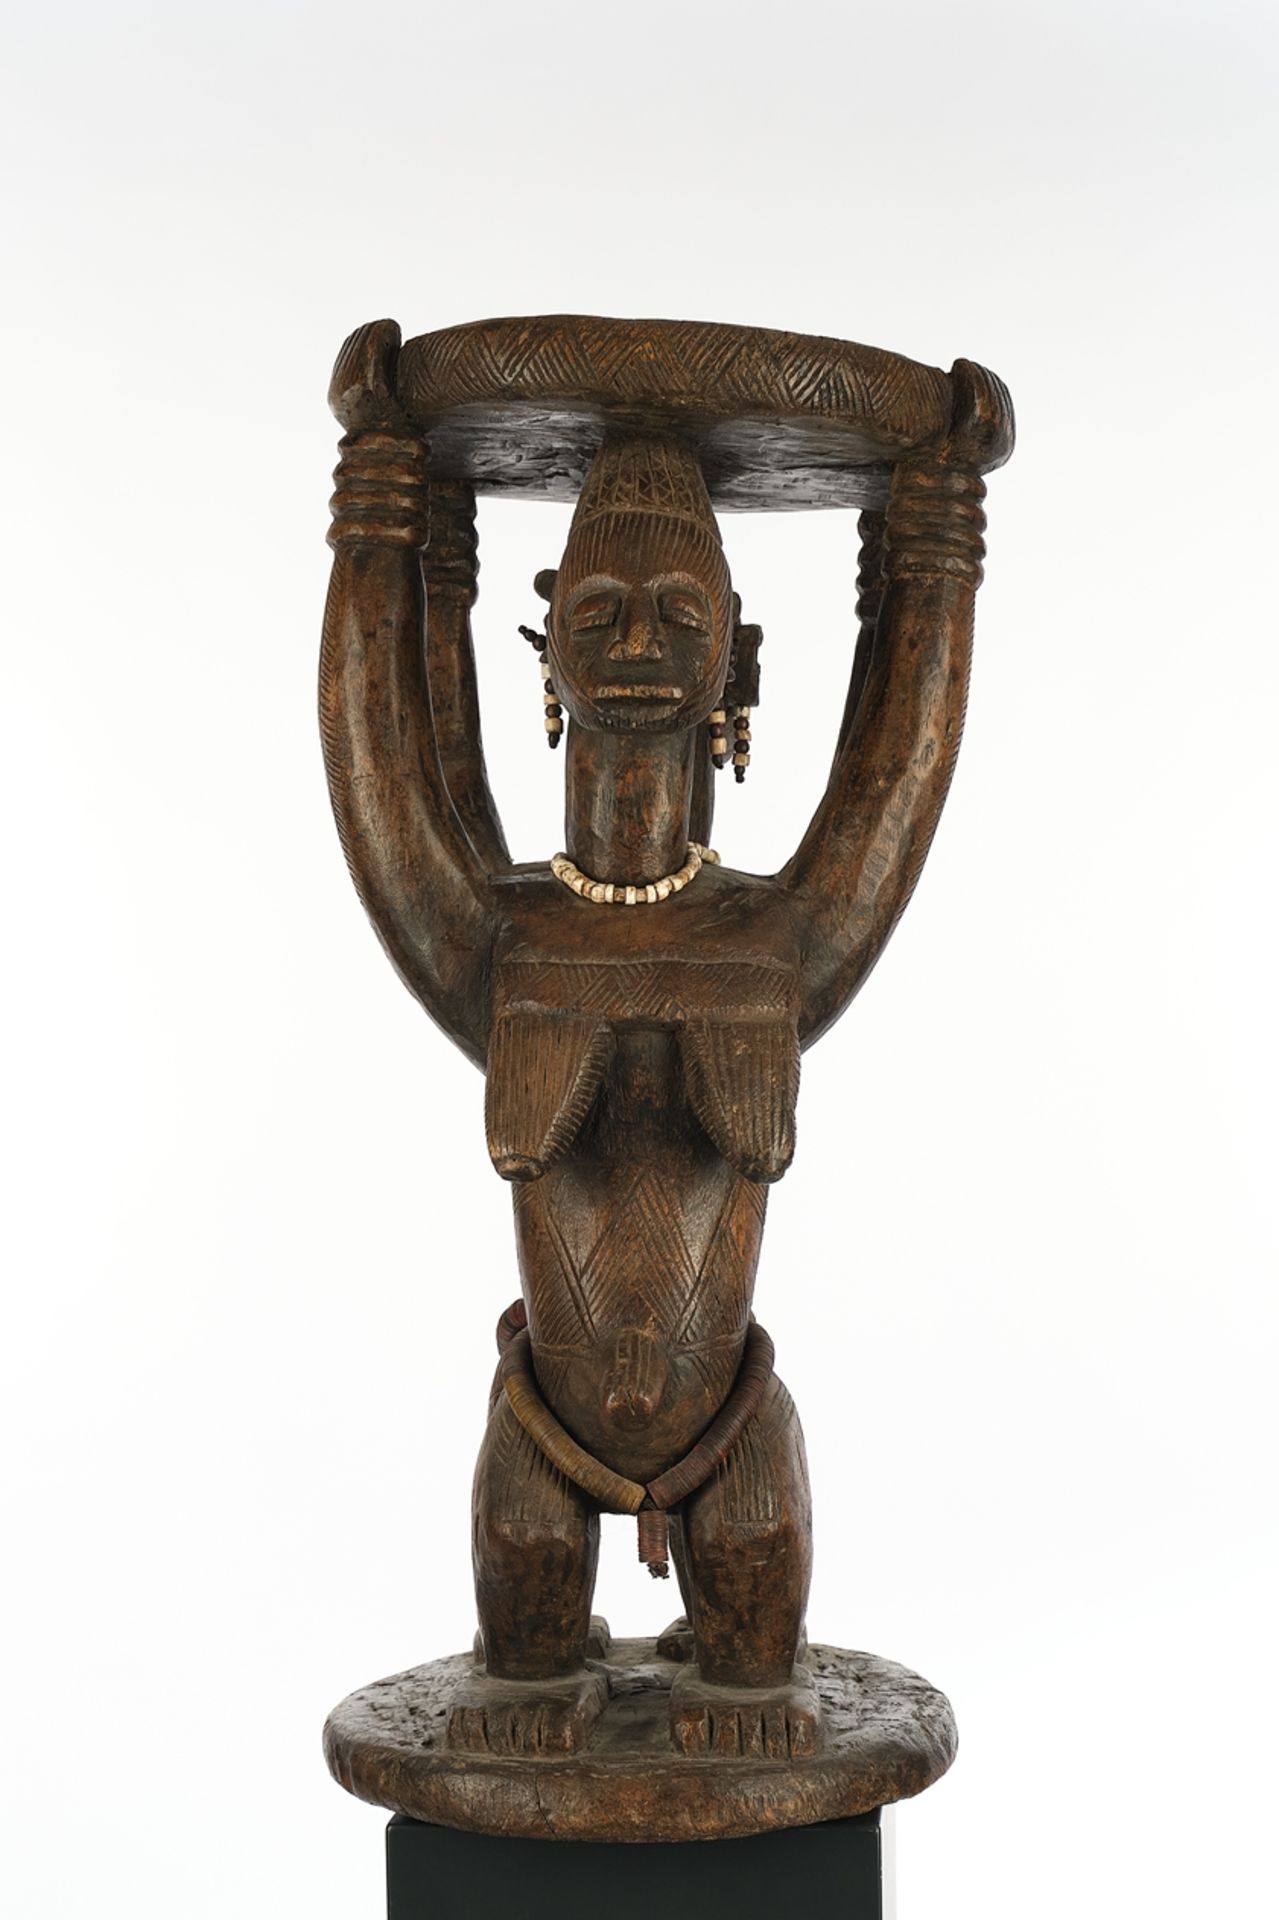 Karyatiden-Hocker, Afo, Zentral-Nigeria, Afrika, Holz, zwei weibliche Karyatiden-Figuren mit Lenden